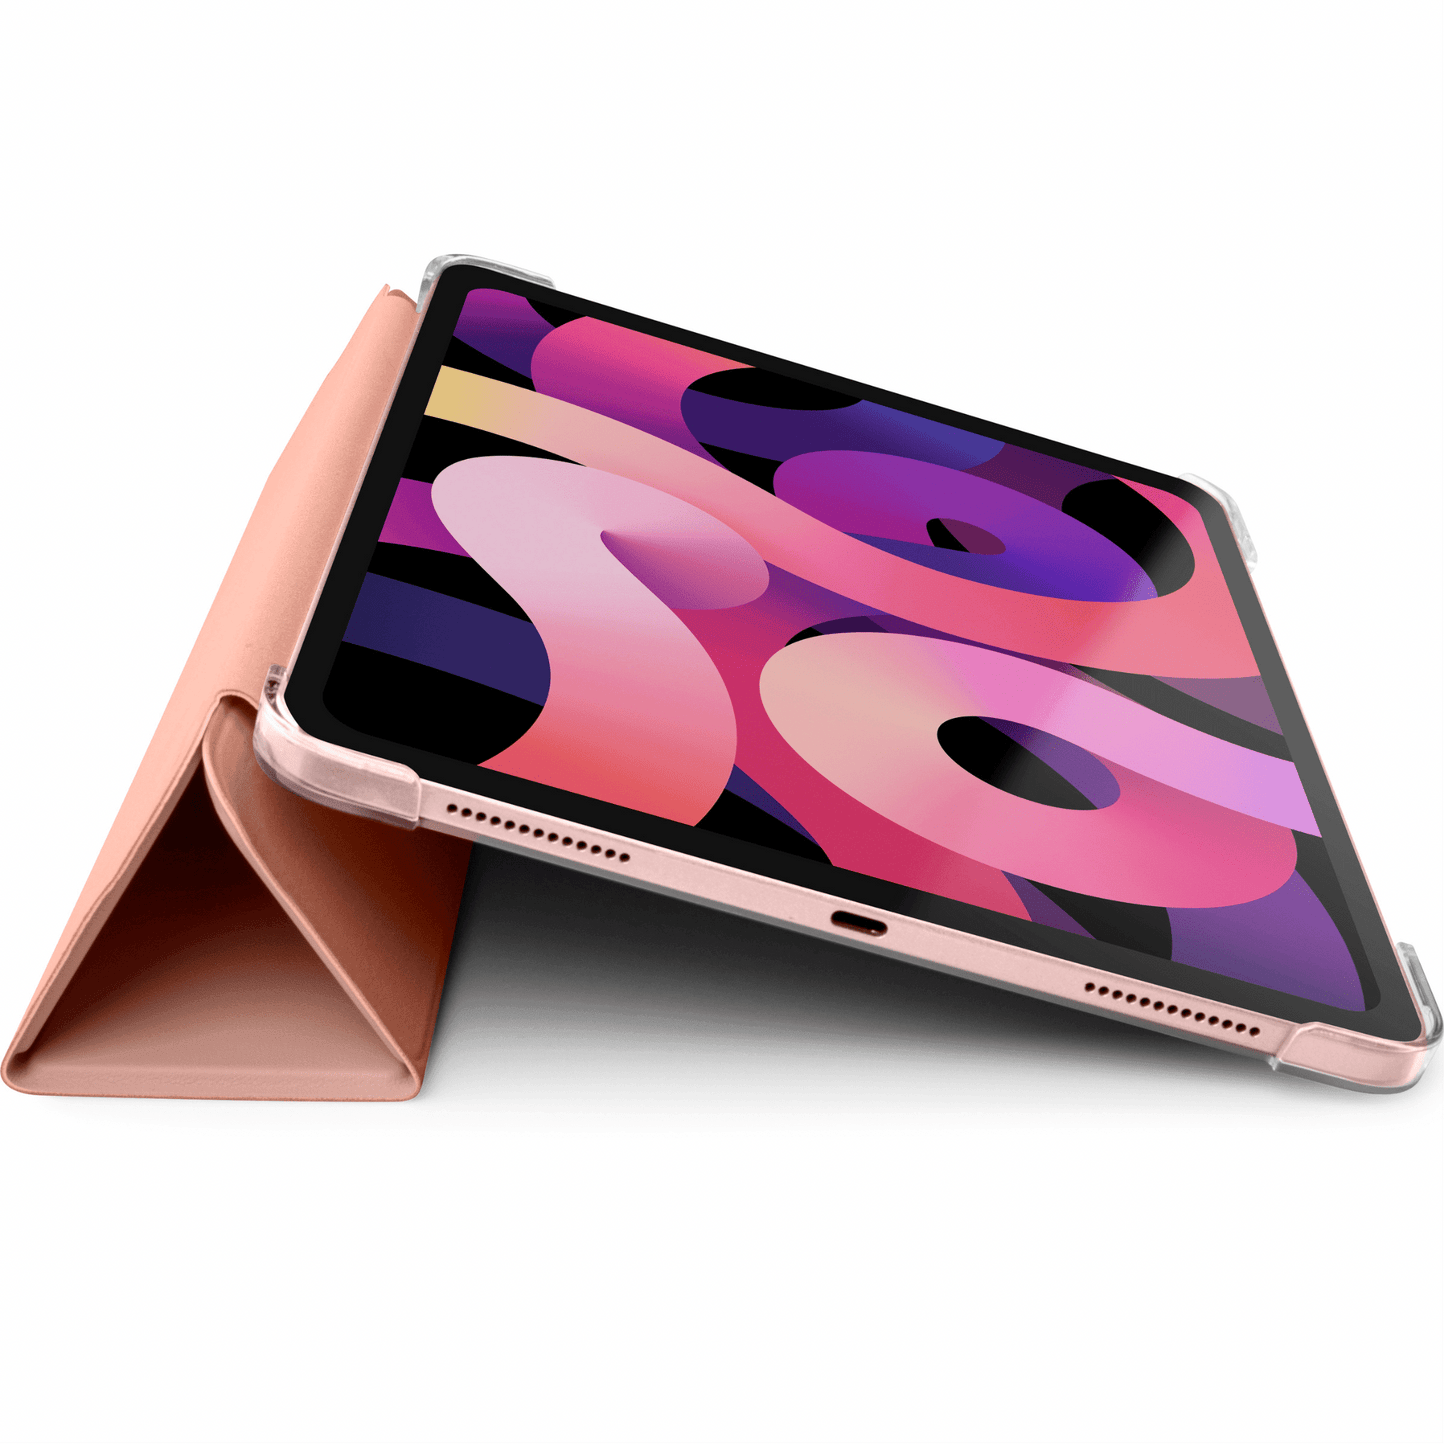 LAUT - iPad Air 10.9" (2020) hochwertige Schutzhülle mit Stand- und Sleep-/Wakefunktion sowie Apple Pencil Abteil - Rosegold - Pazzar.ch